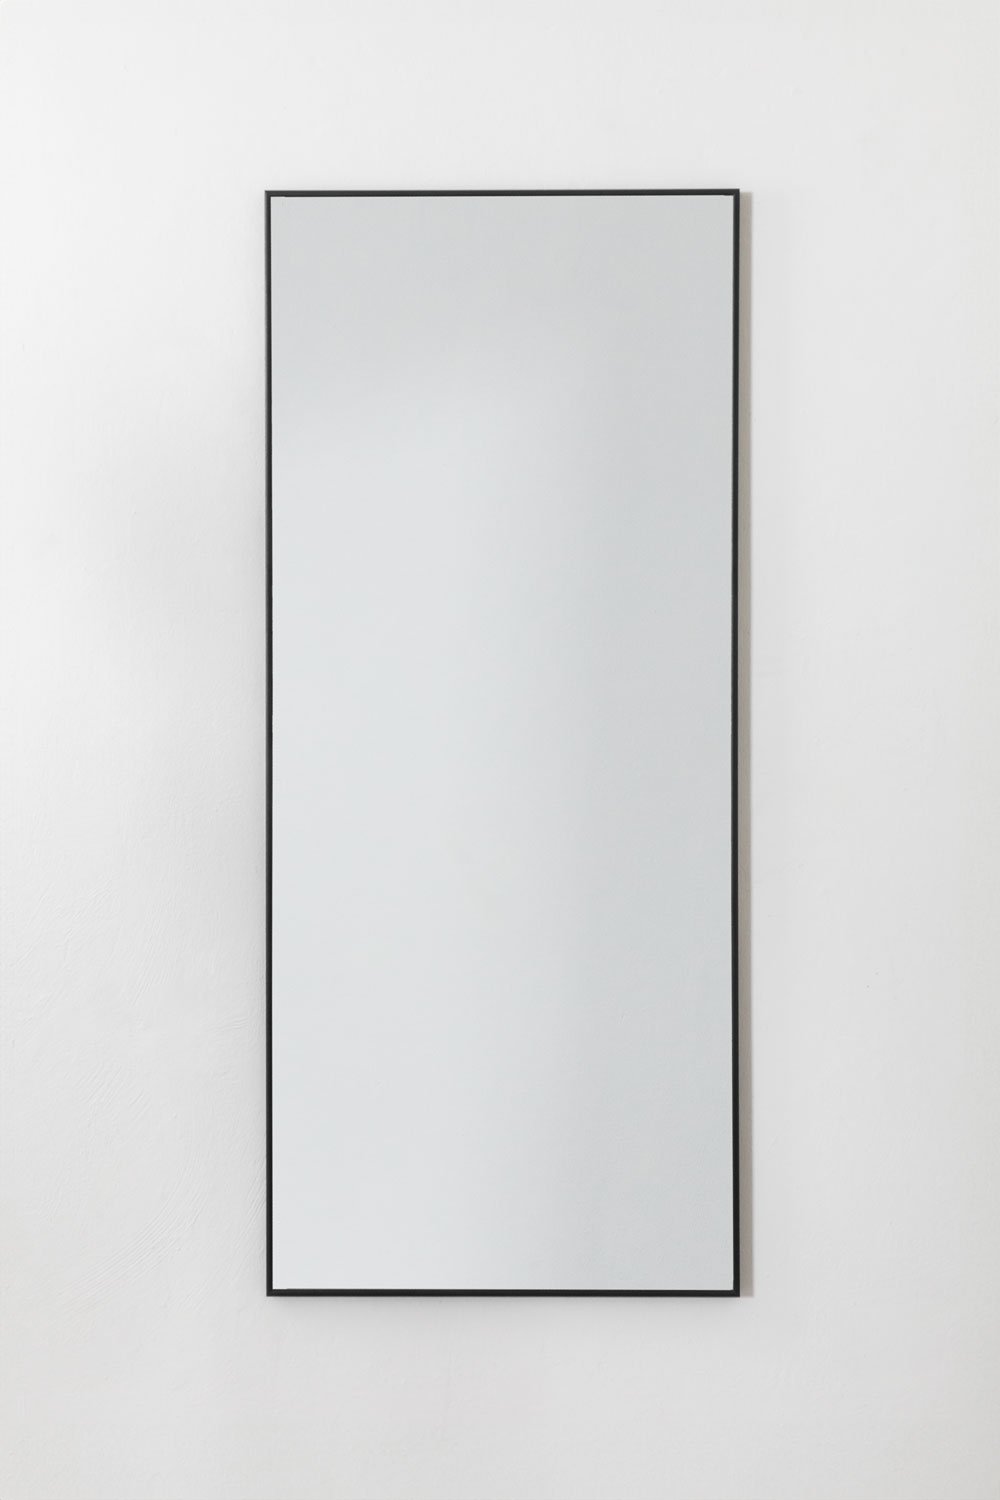 Miroir mural en aluminium (60x140 cm) Kaoze, image de la galerie 2